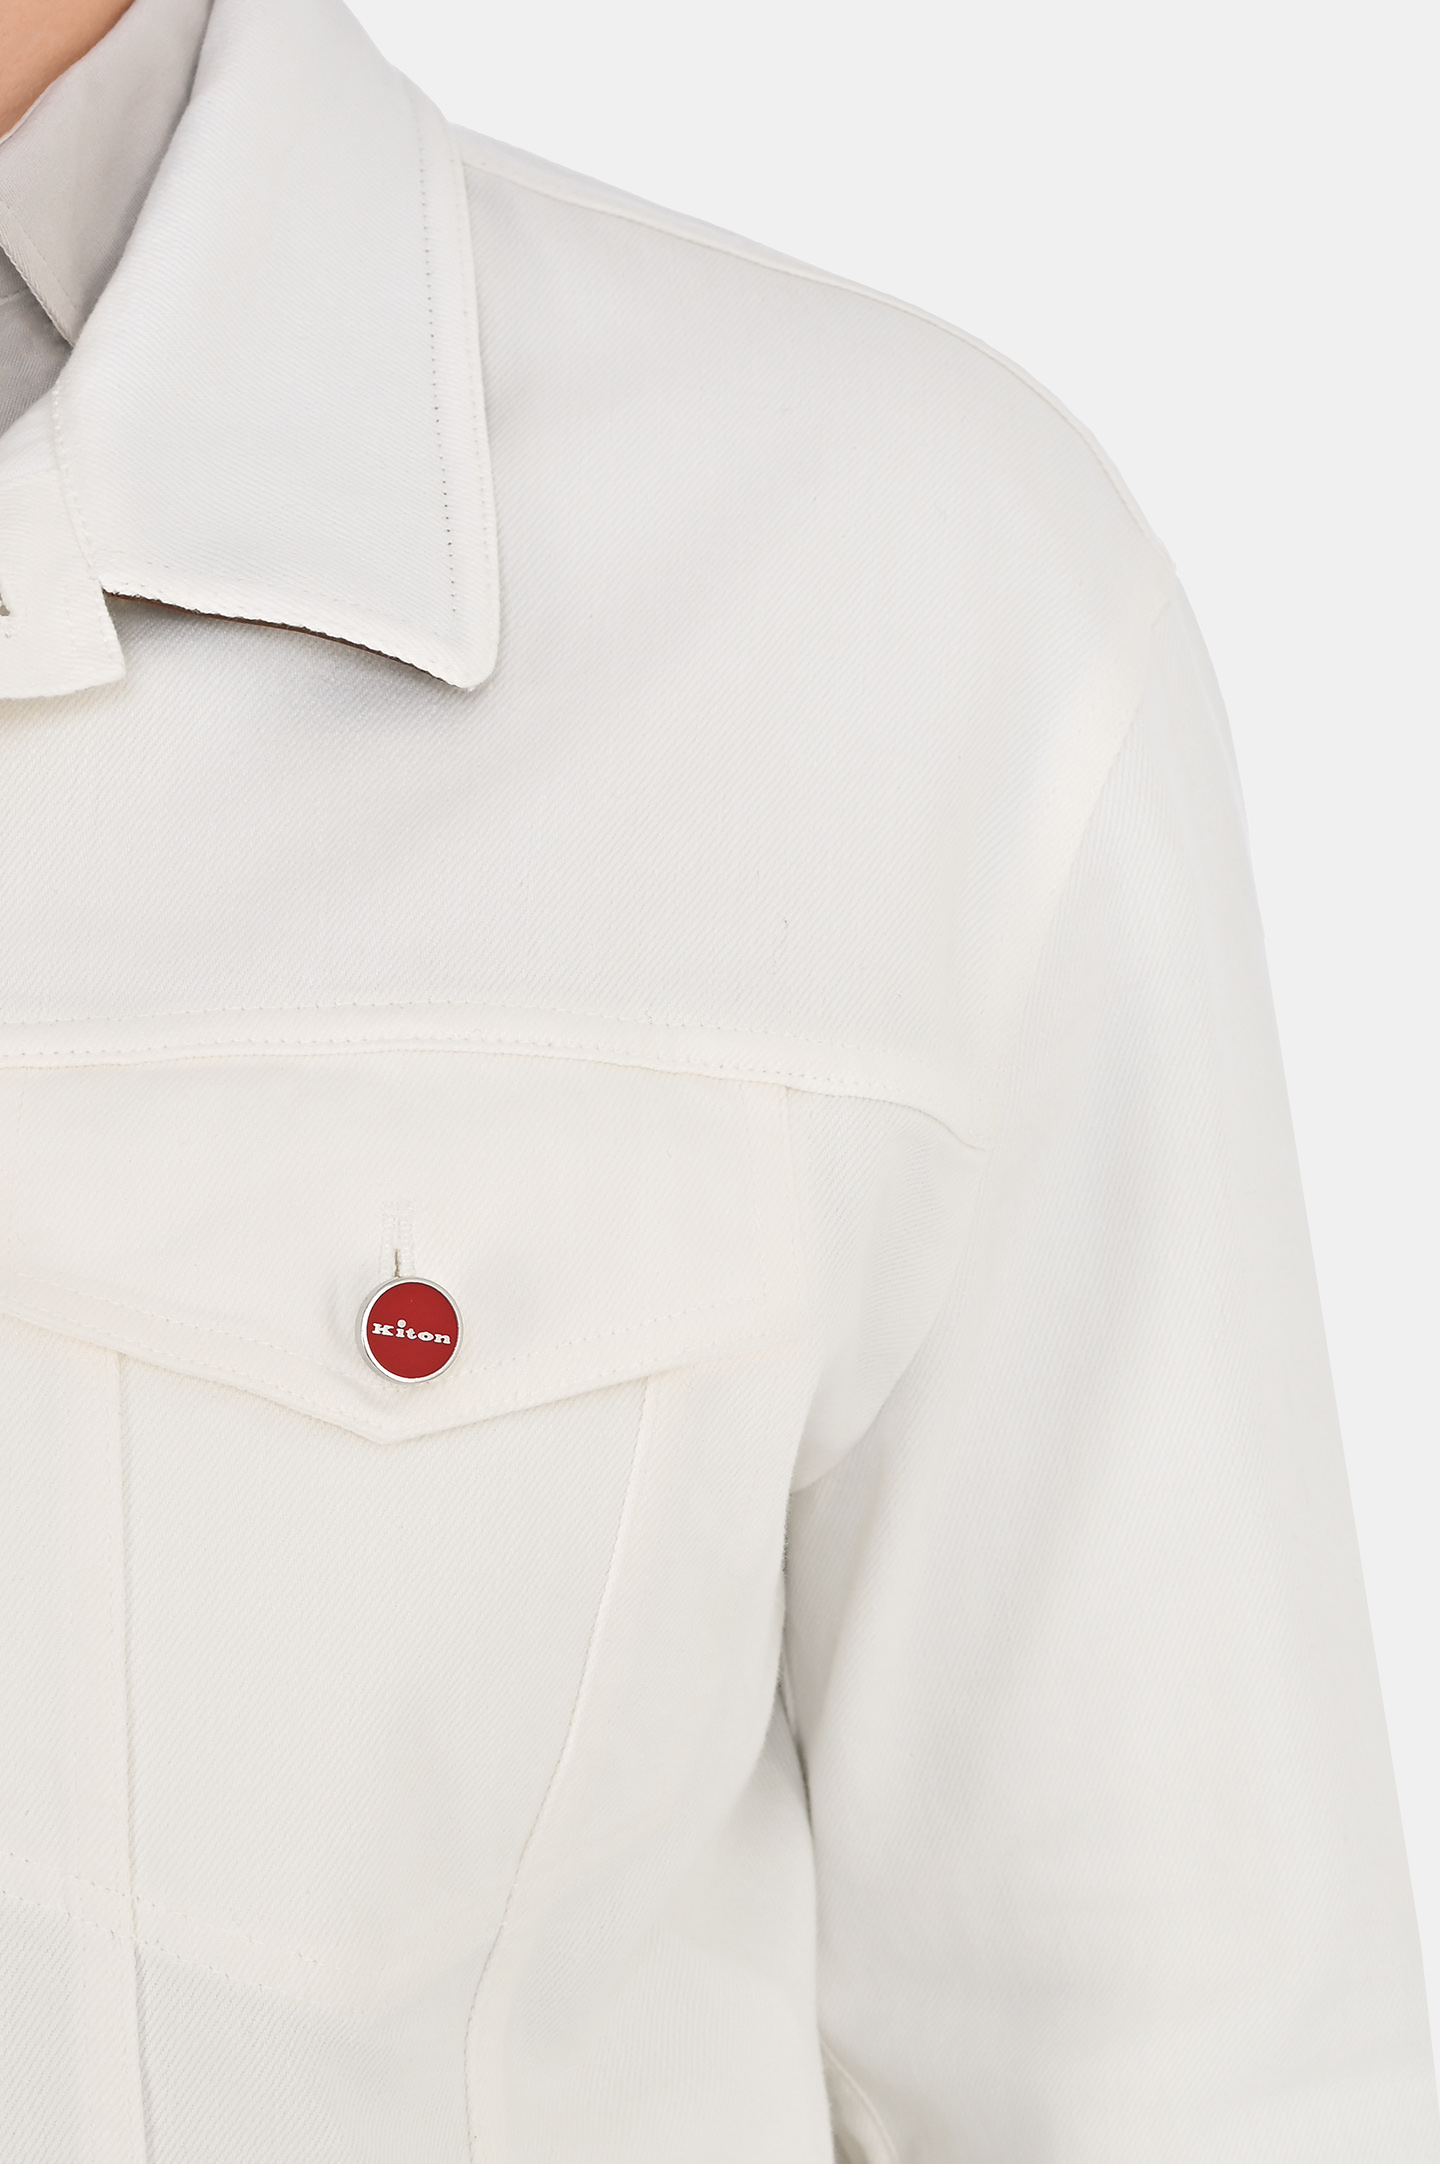 Джинсовая куртка с карманами KITON UW1700V0804C0, цвет: Белый, Мужской